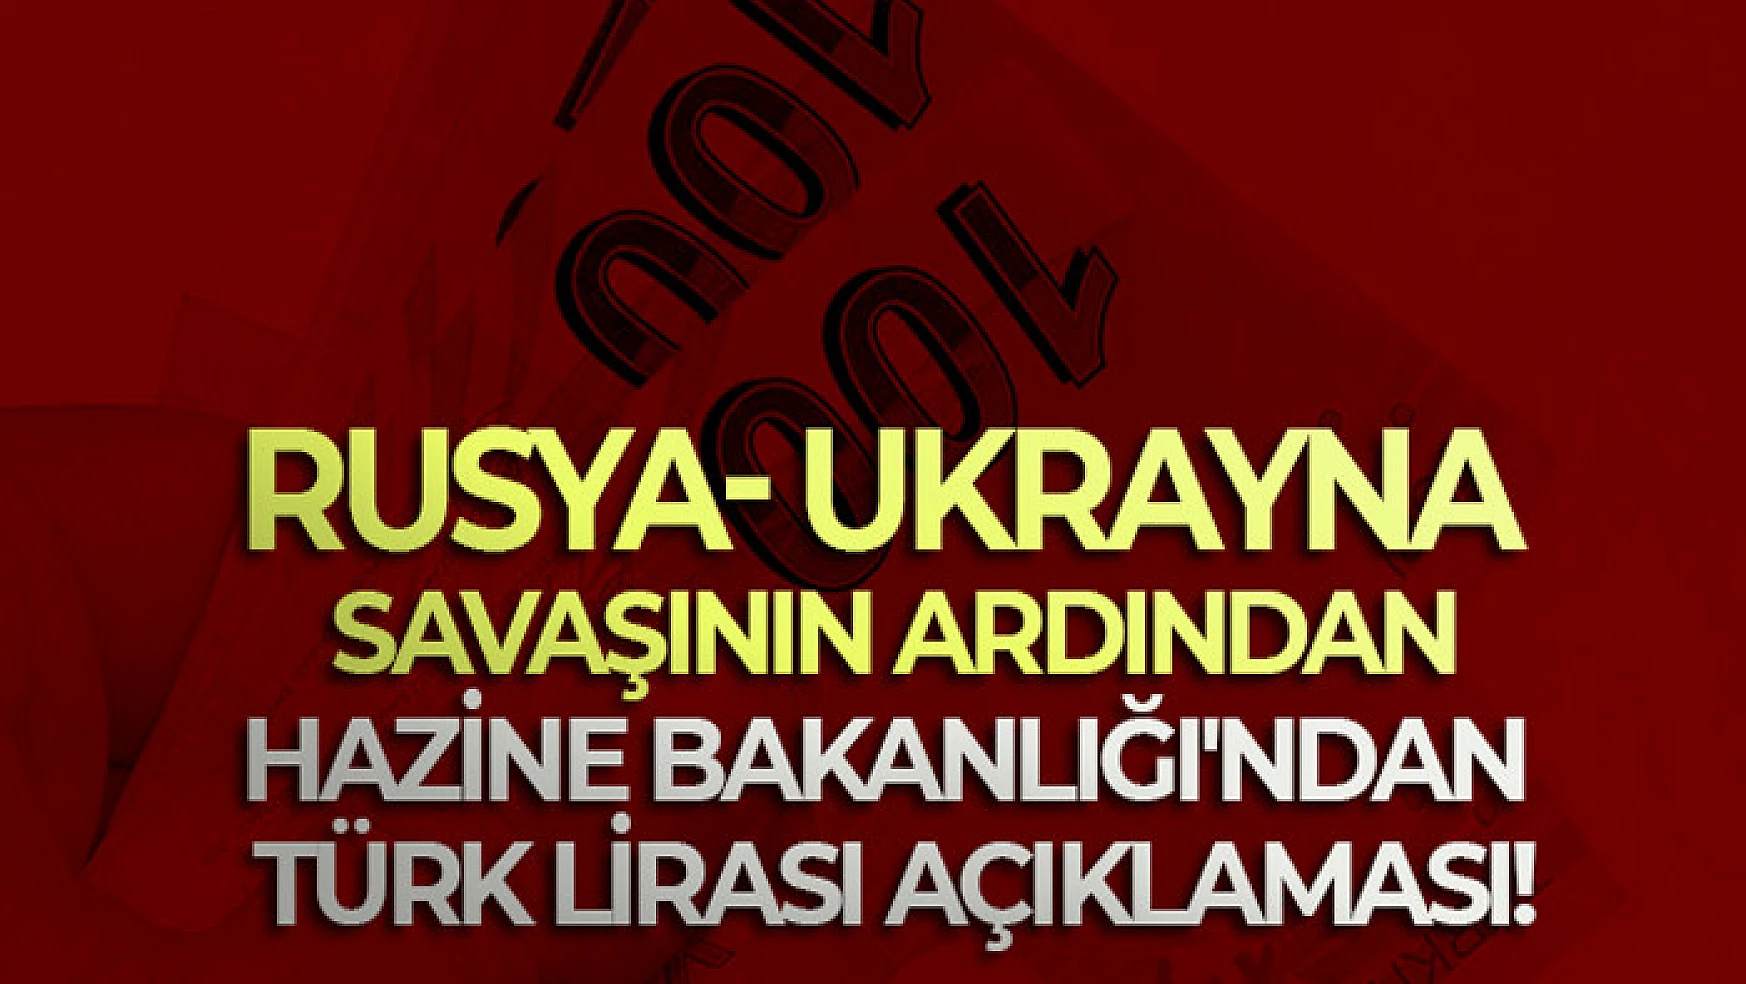 Rusya- Ukrayna savaşının ardından Hazine Bakanlığı'ndan Türk Lirası açıklaması!